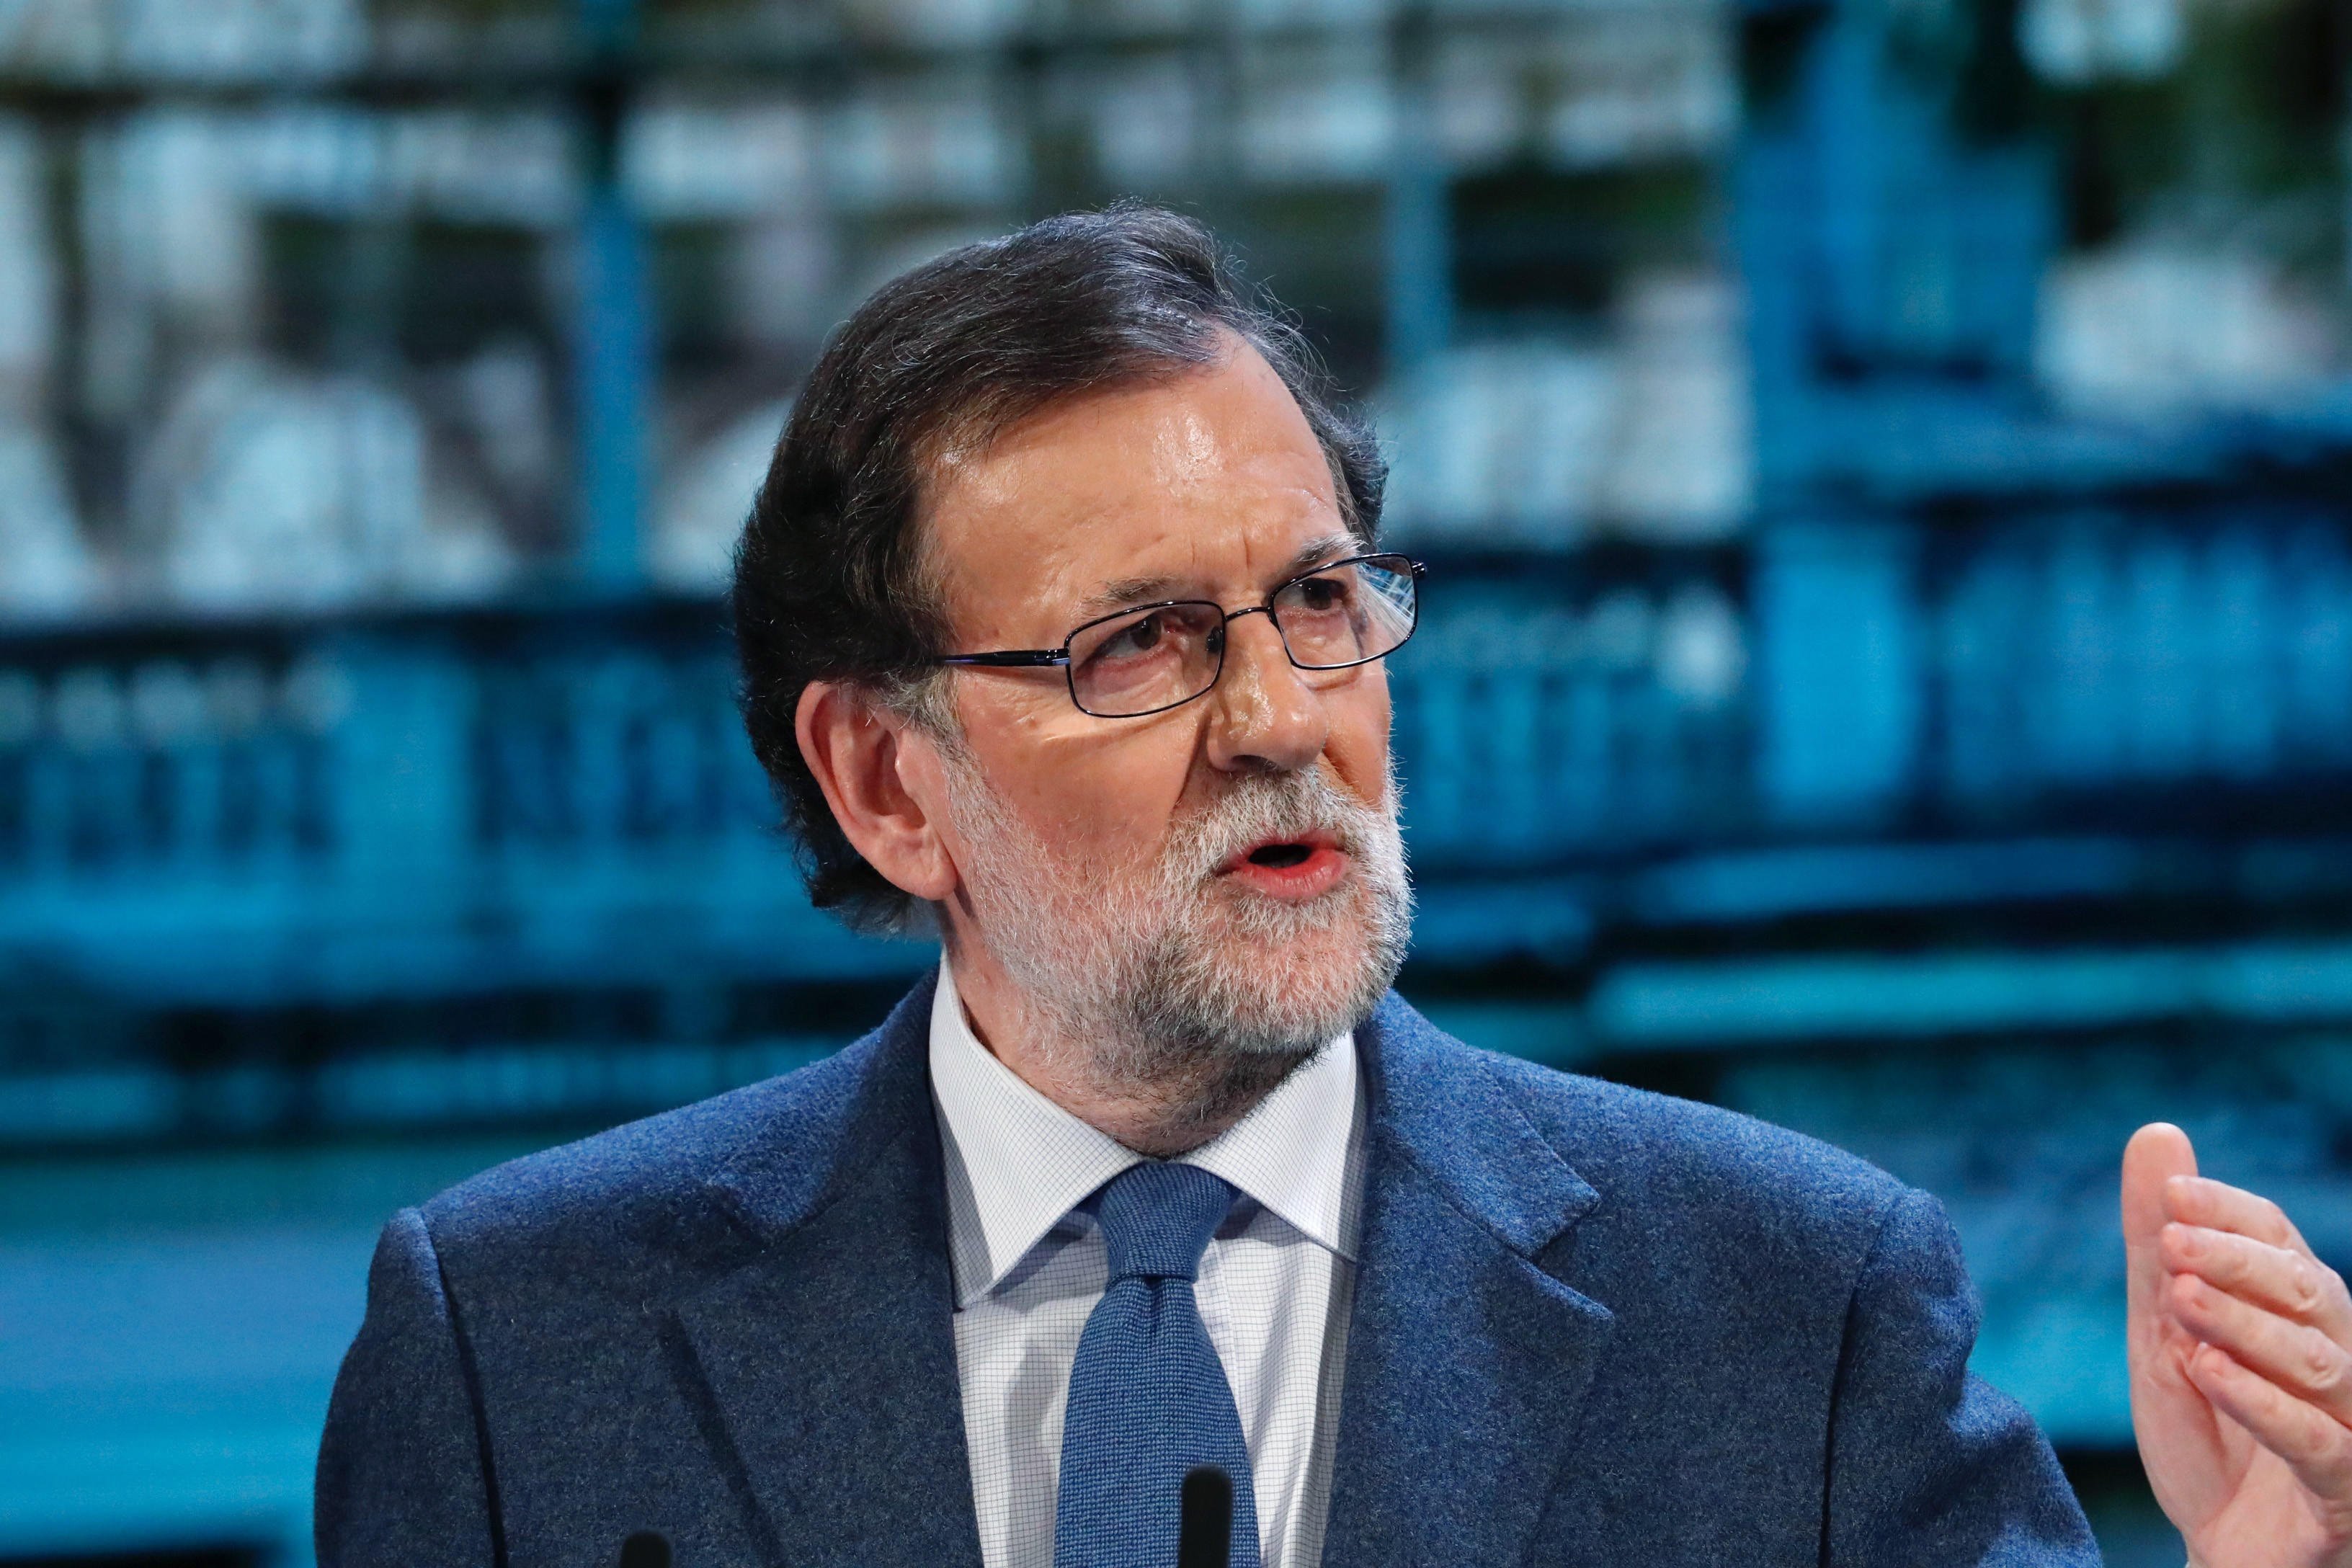 No habrá "nada a cambio" del desarme de ETA, asegura Mariano Rajoy